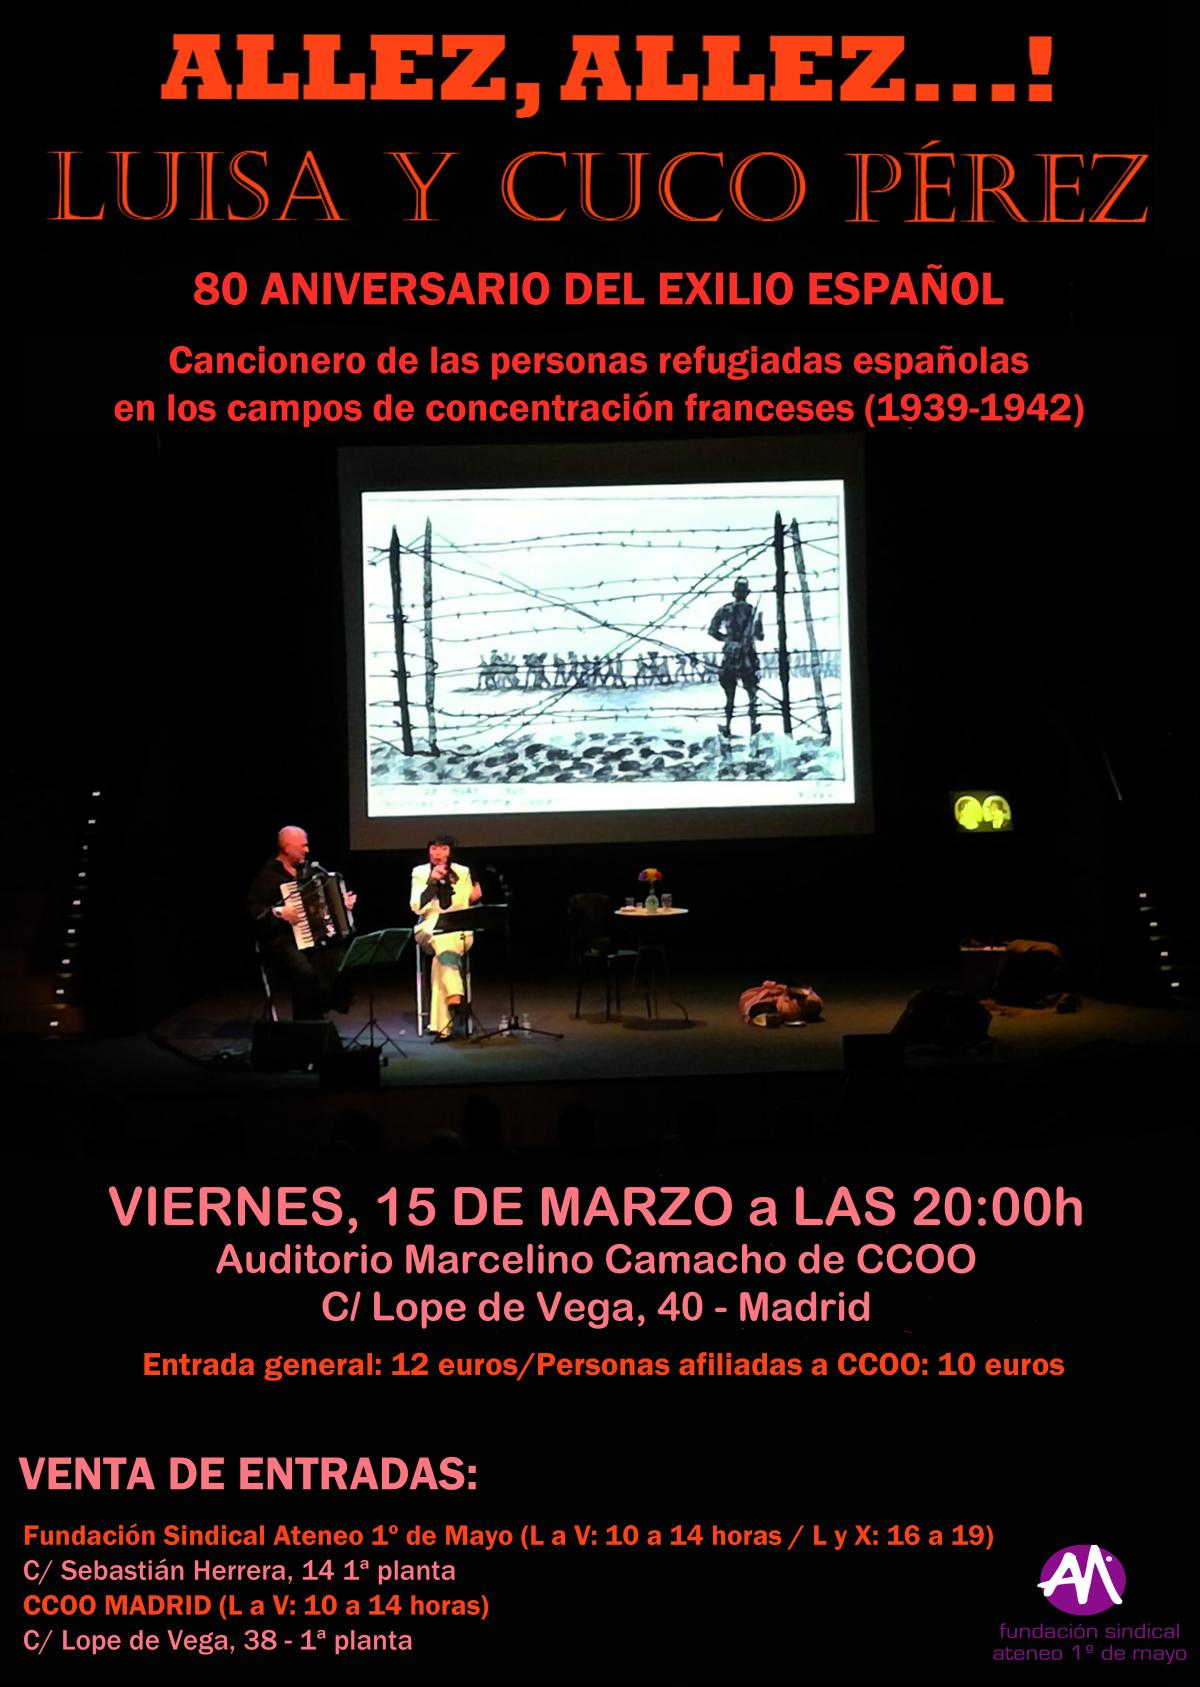 Allez, Allez! Luisa y Cuco P�rez en concierto. 80 Aniversario del exilio espa�ol